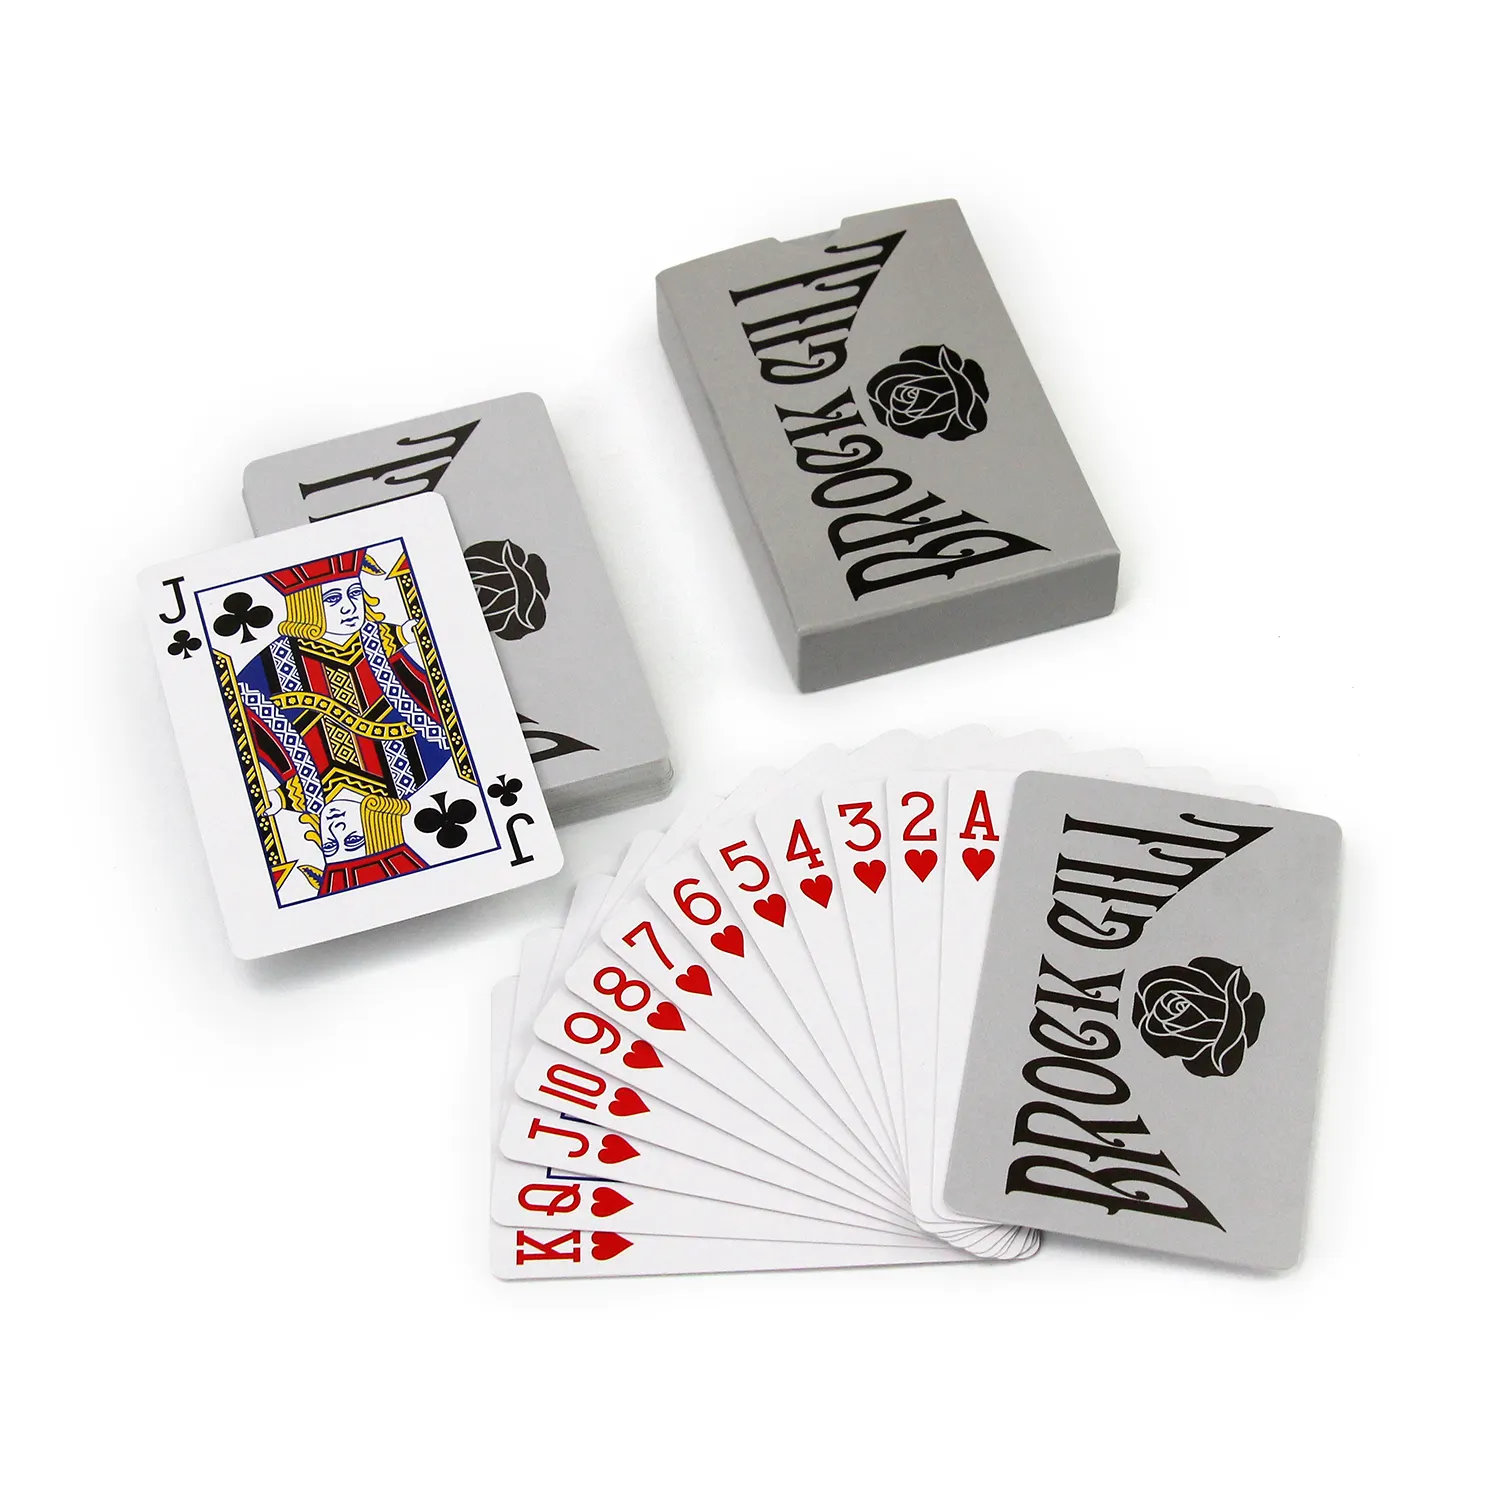 Kalite garantili kağıt kartı poker yüksek kaliteli özel logo tam renkli baskı kağıdı satılık oyun kartları